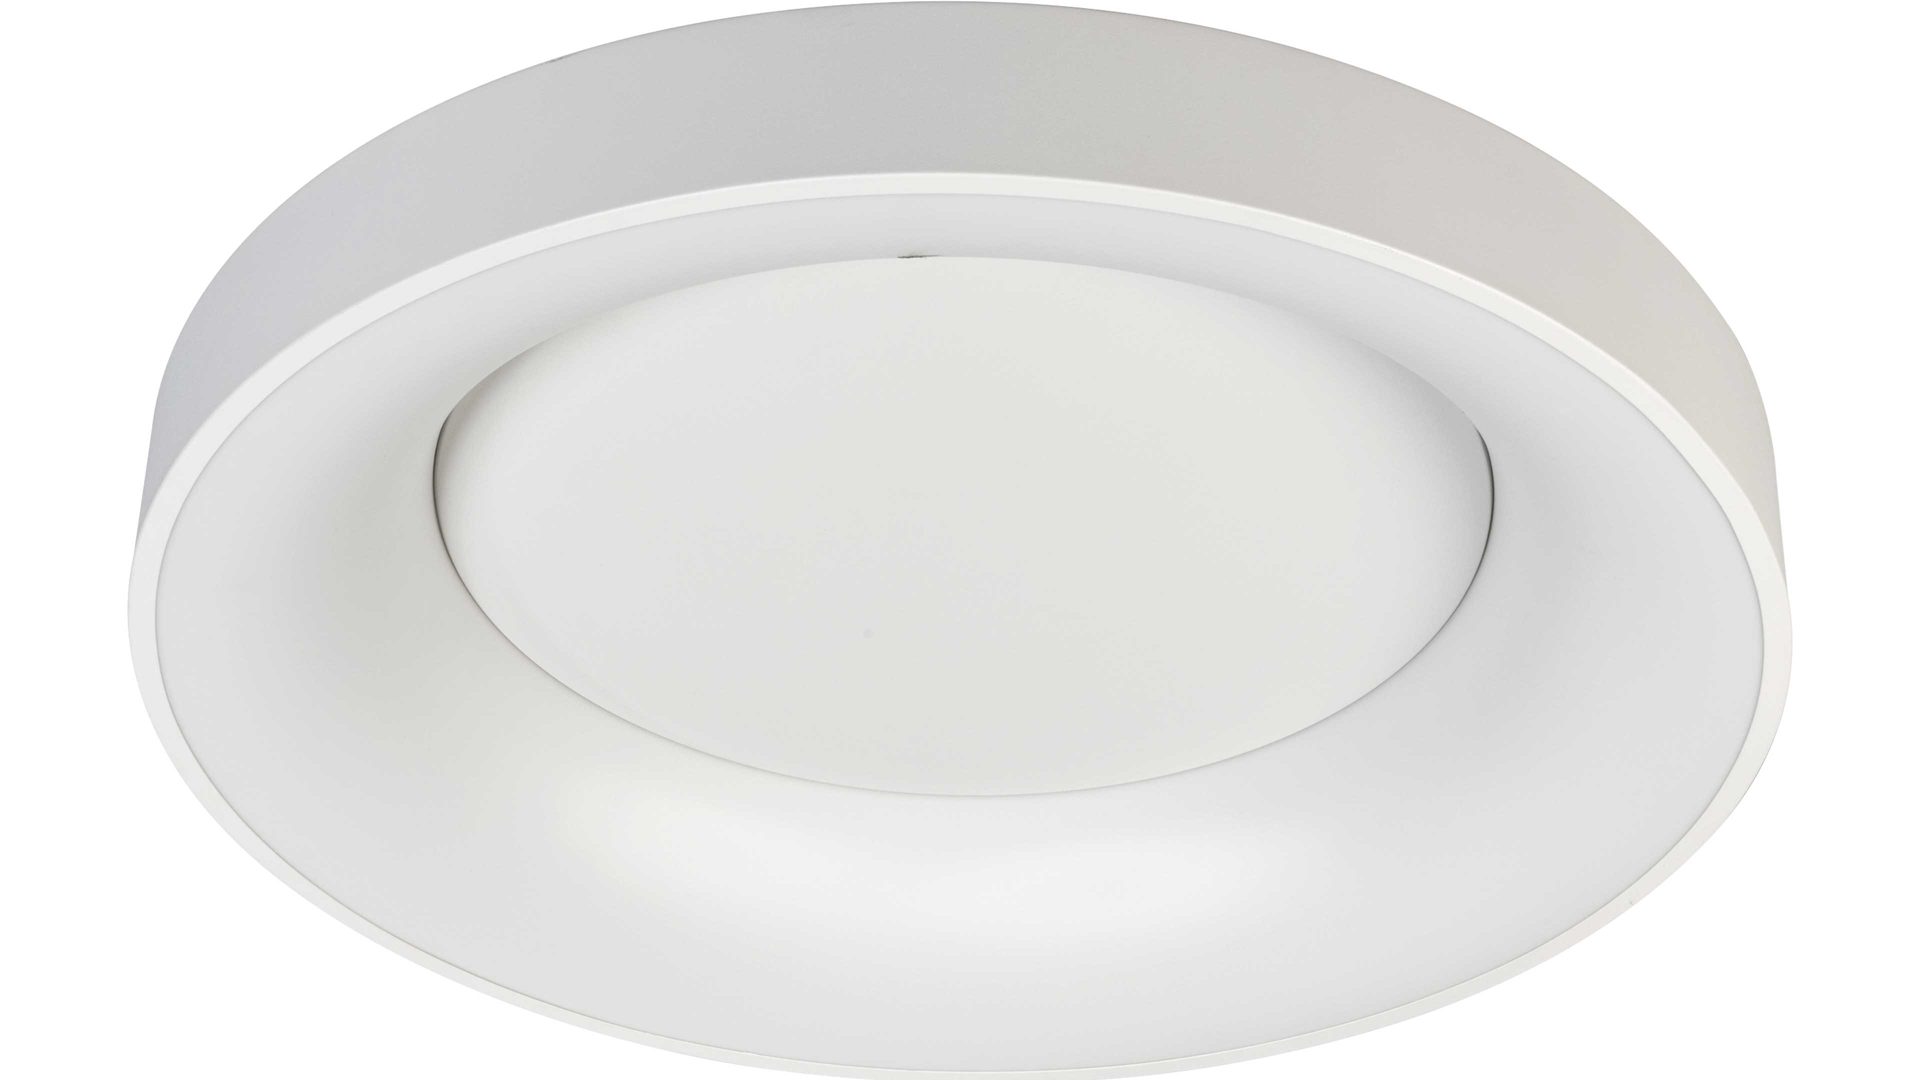 Deckenleuchte Wofi aus Kunststoff in Weiß LED-Deckenleuchte Cameron weißes Metall & weißer Kunststoff – Durchmesser ca. 45 cm